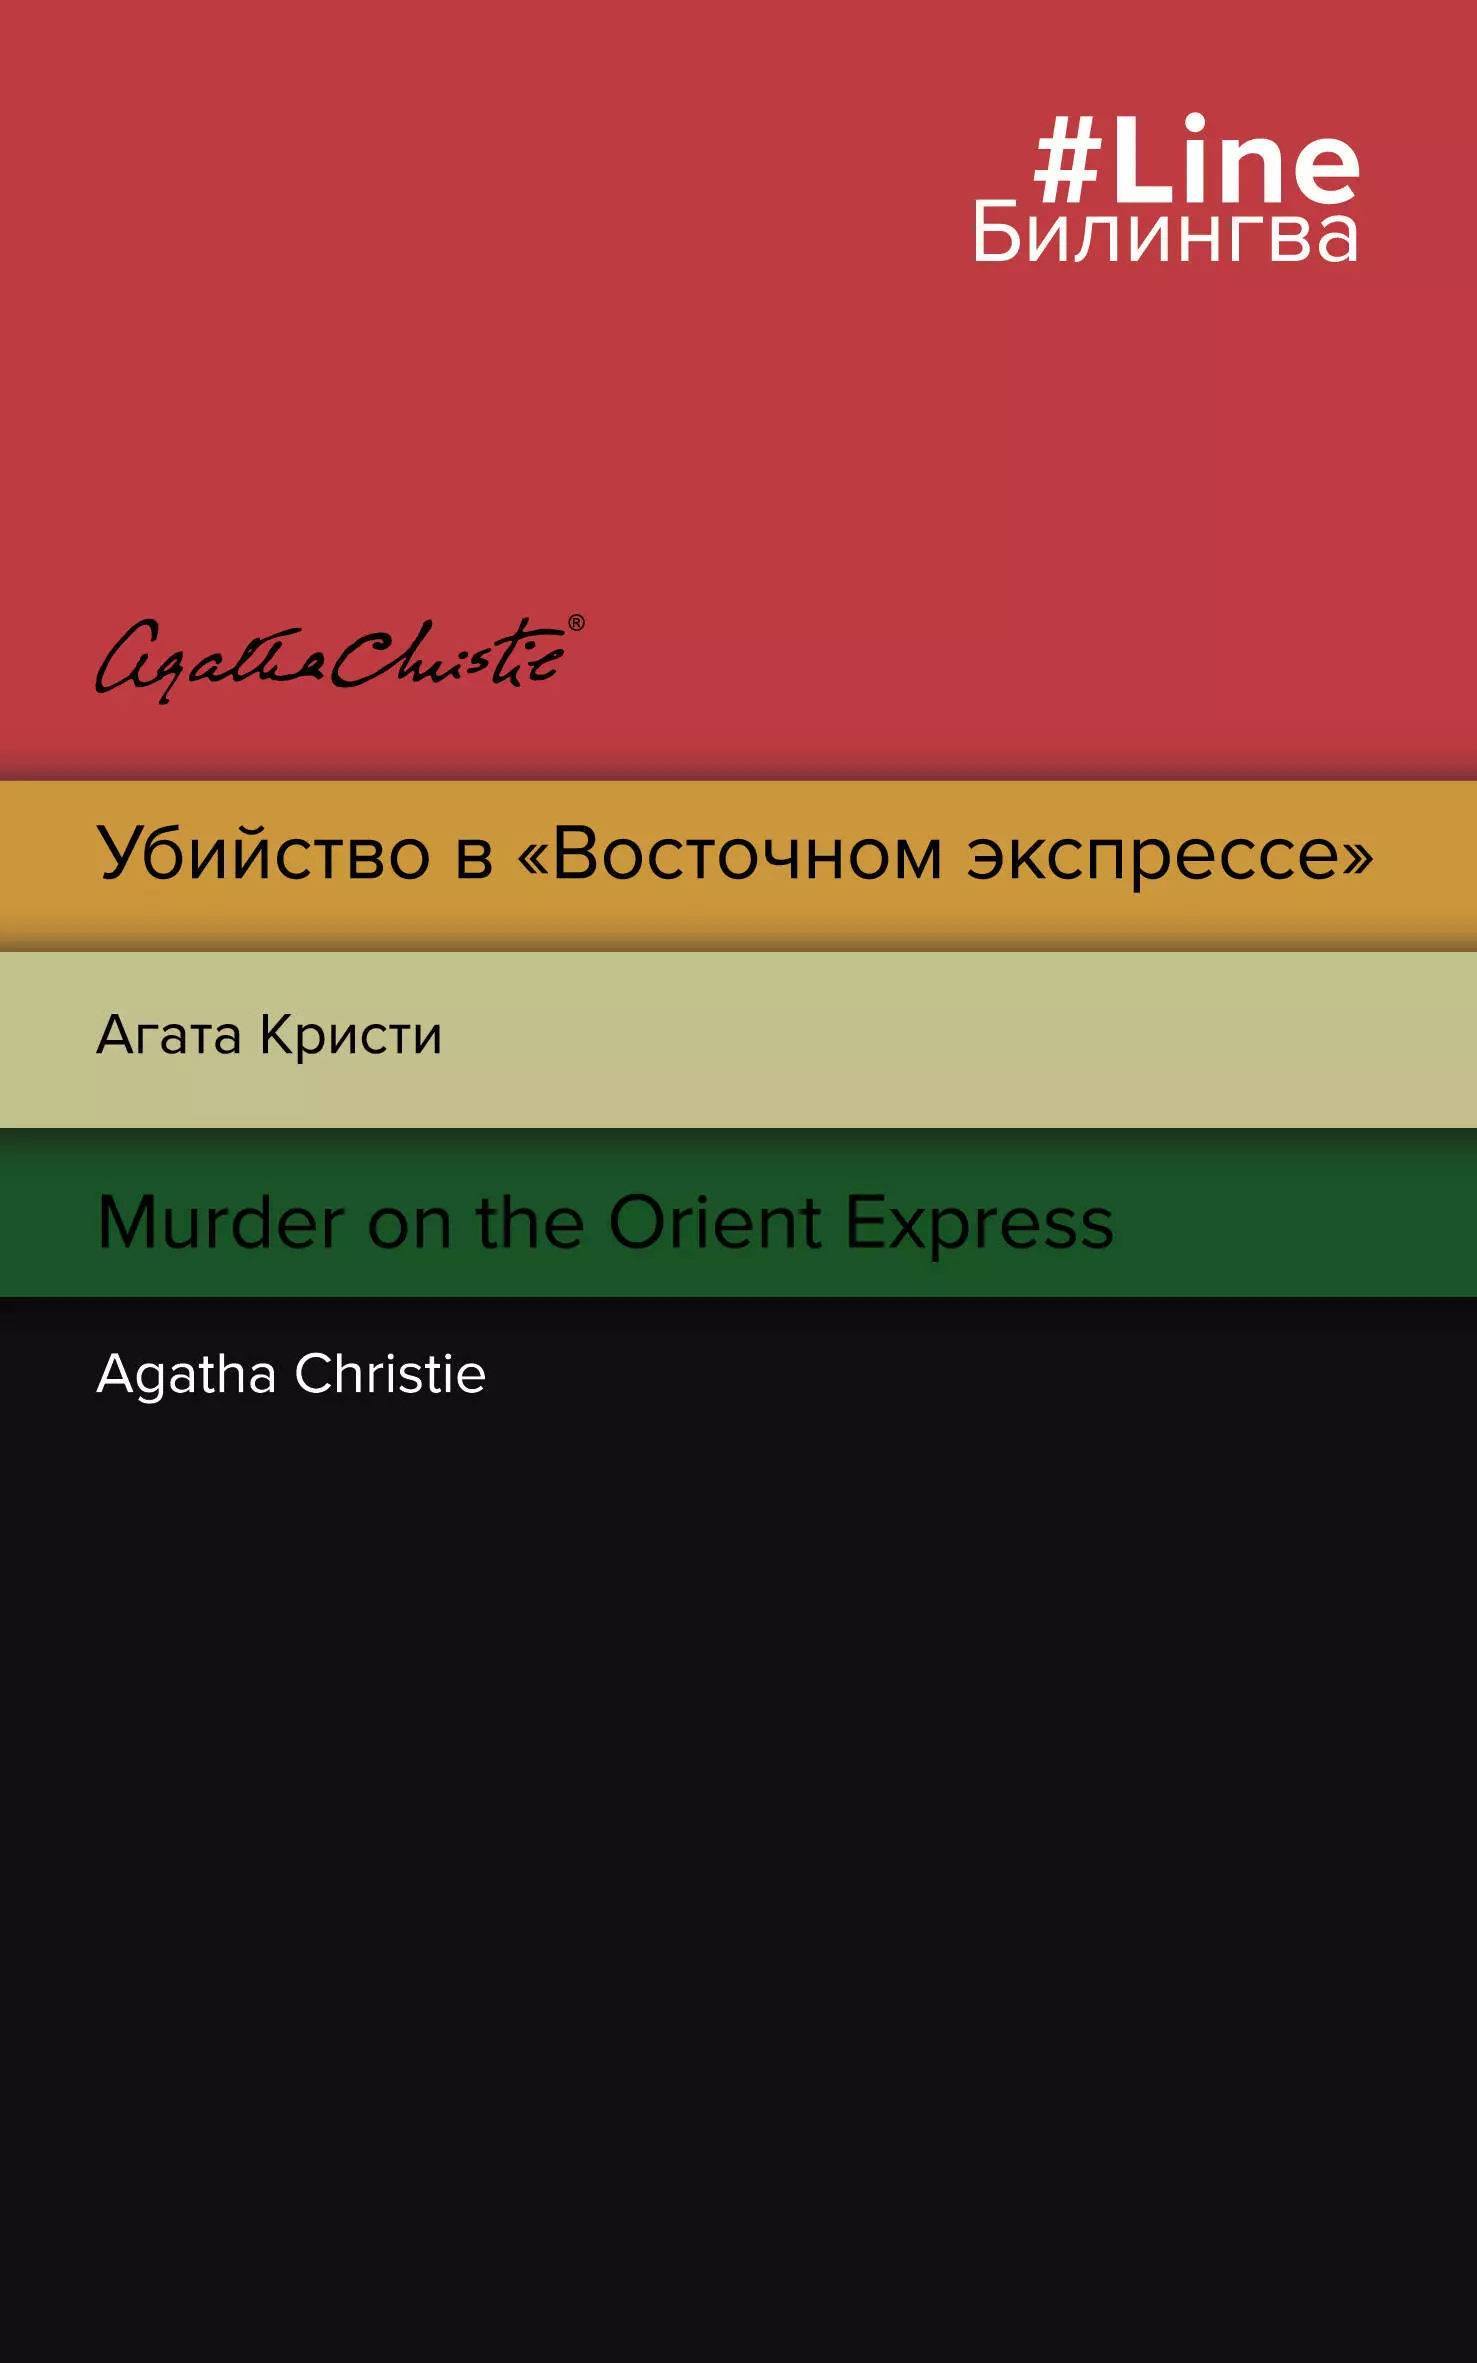 Кристи Агата Убийство в Восточном экспрессе / Murder on the Orient Express кристи агата убийство в восточном экспрессе murder on the orient express на англ языке